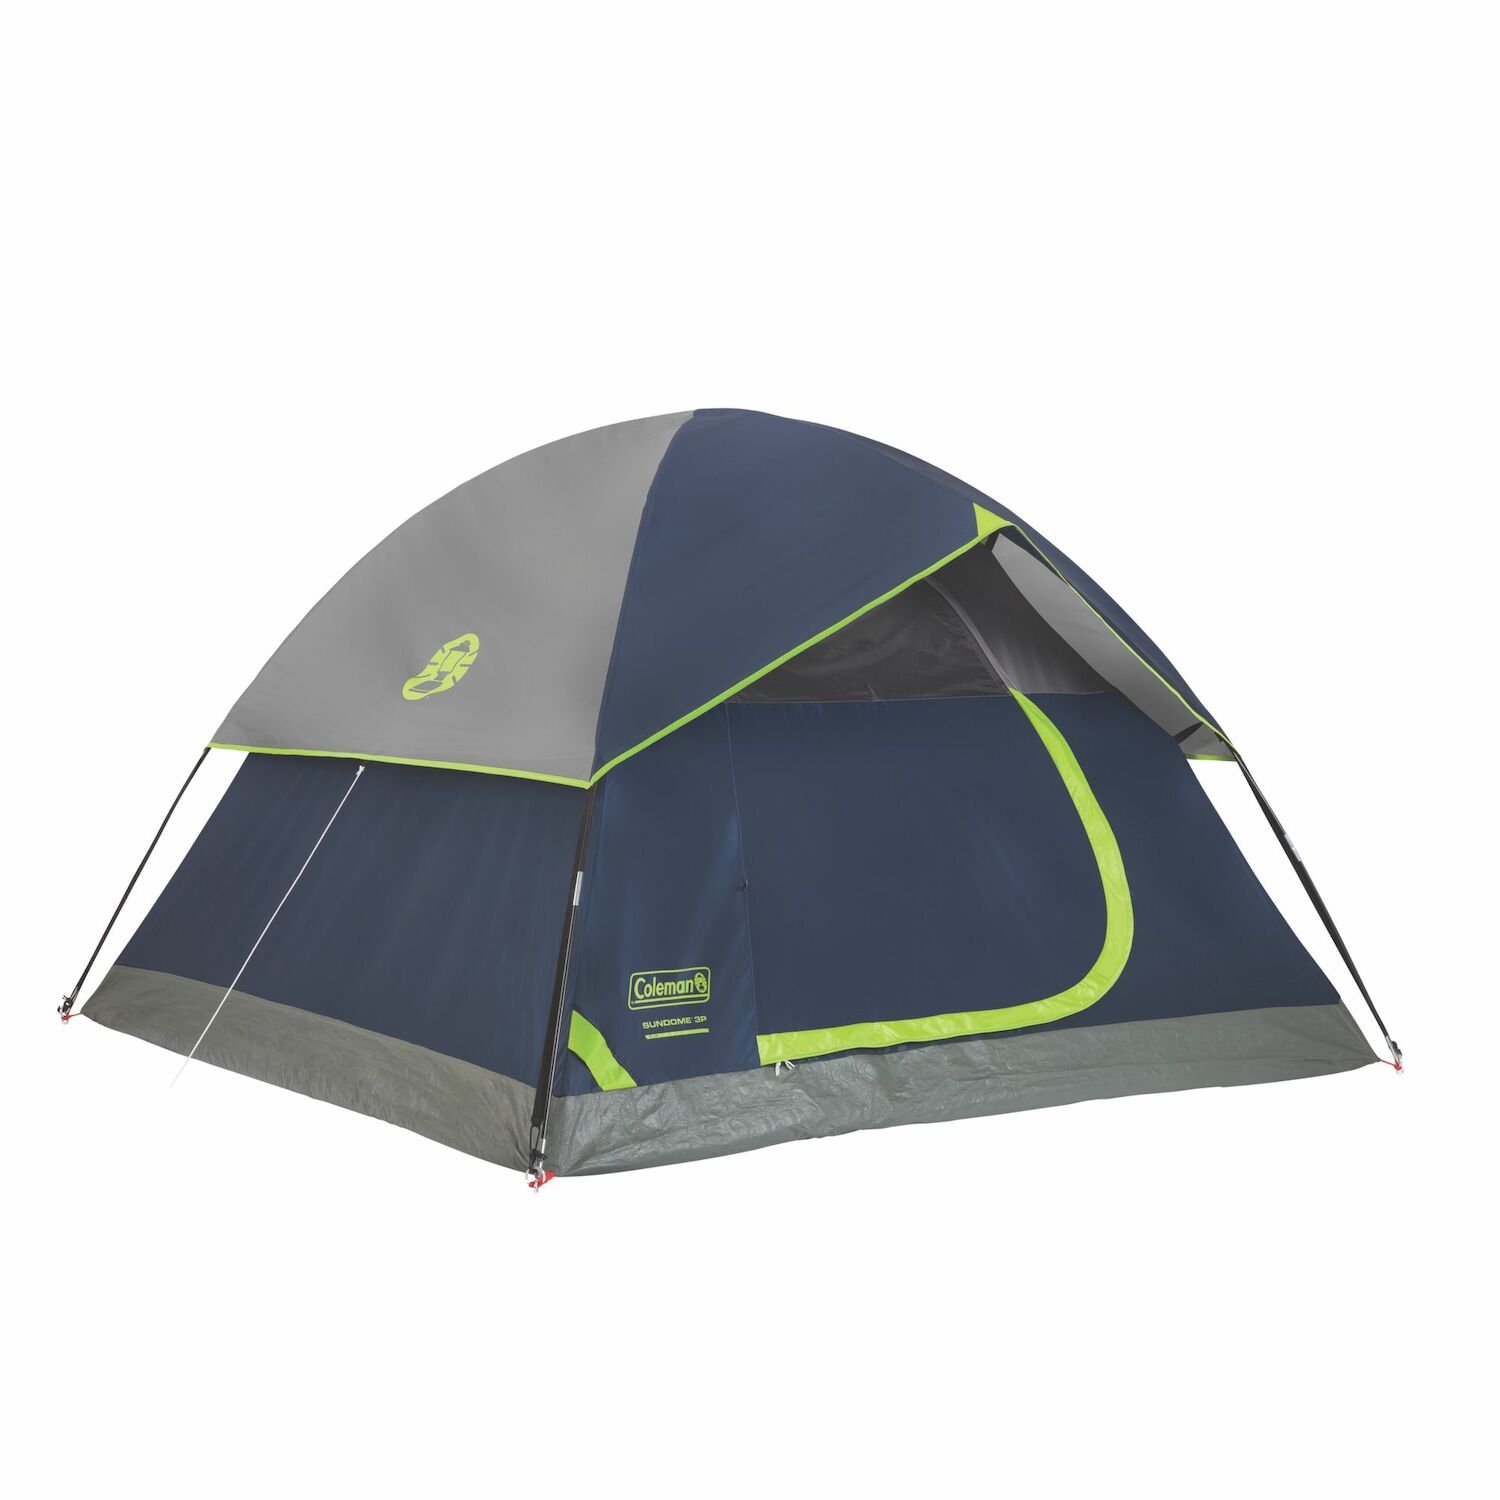 Sundome 3-Person Dome Tent